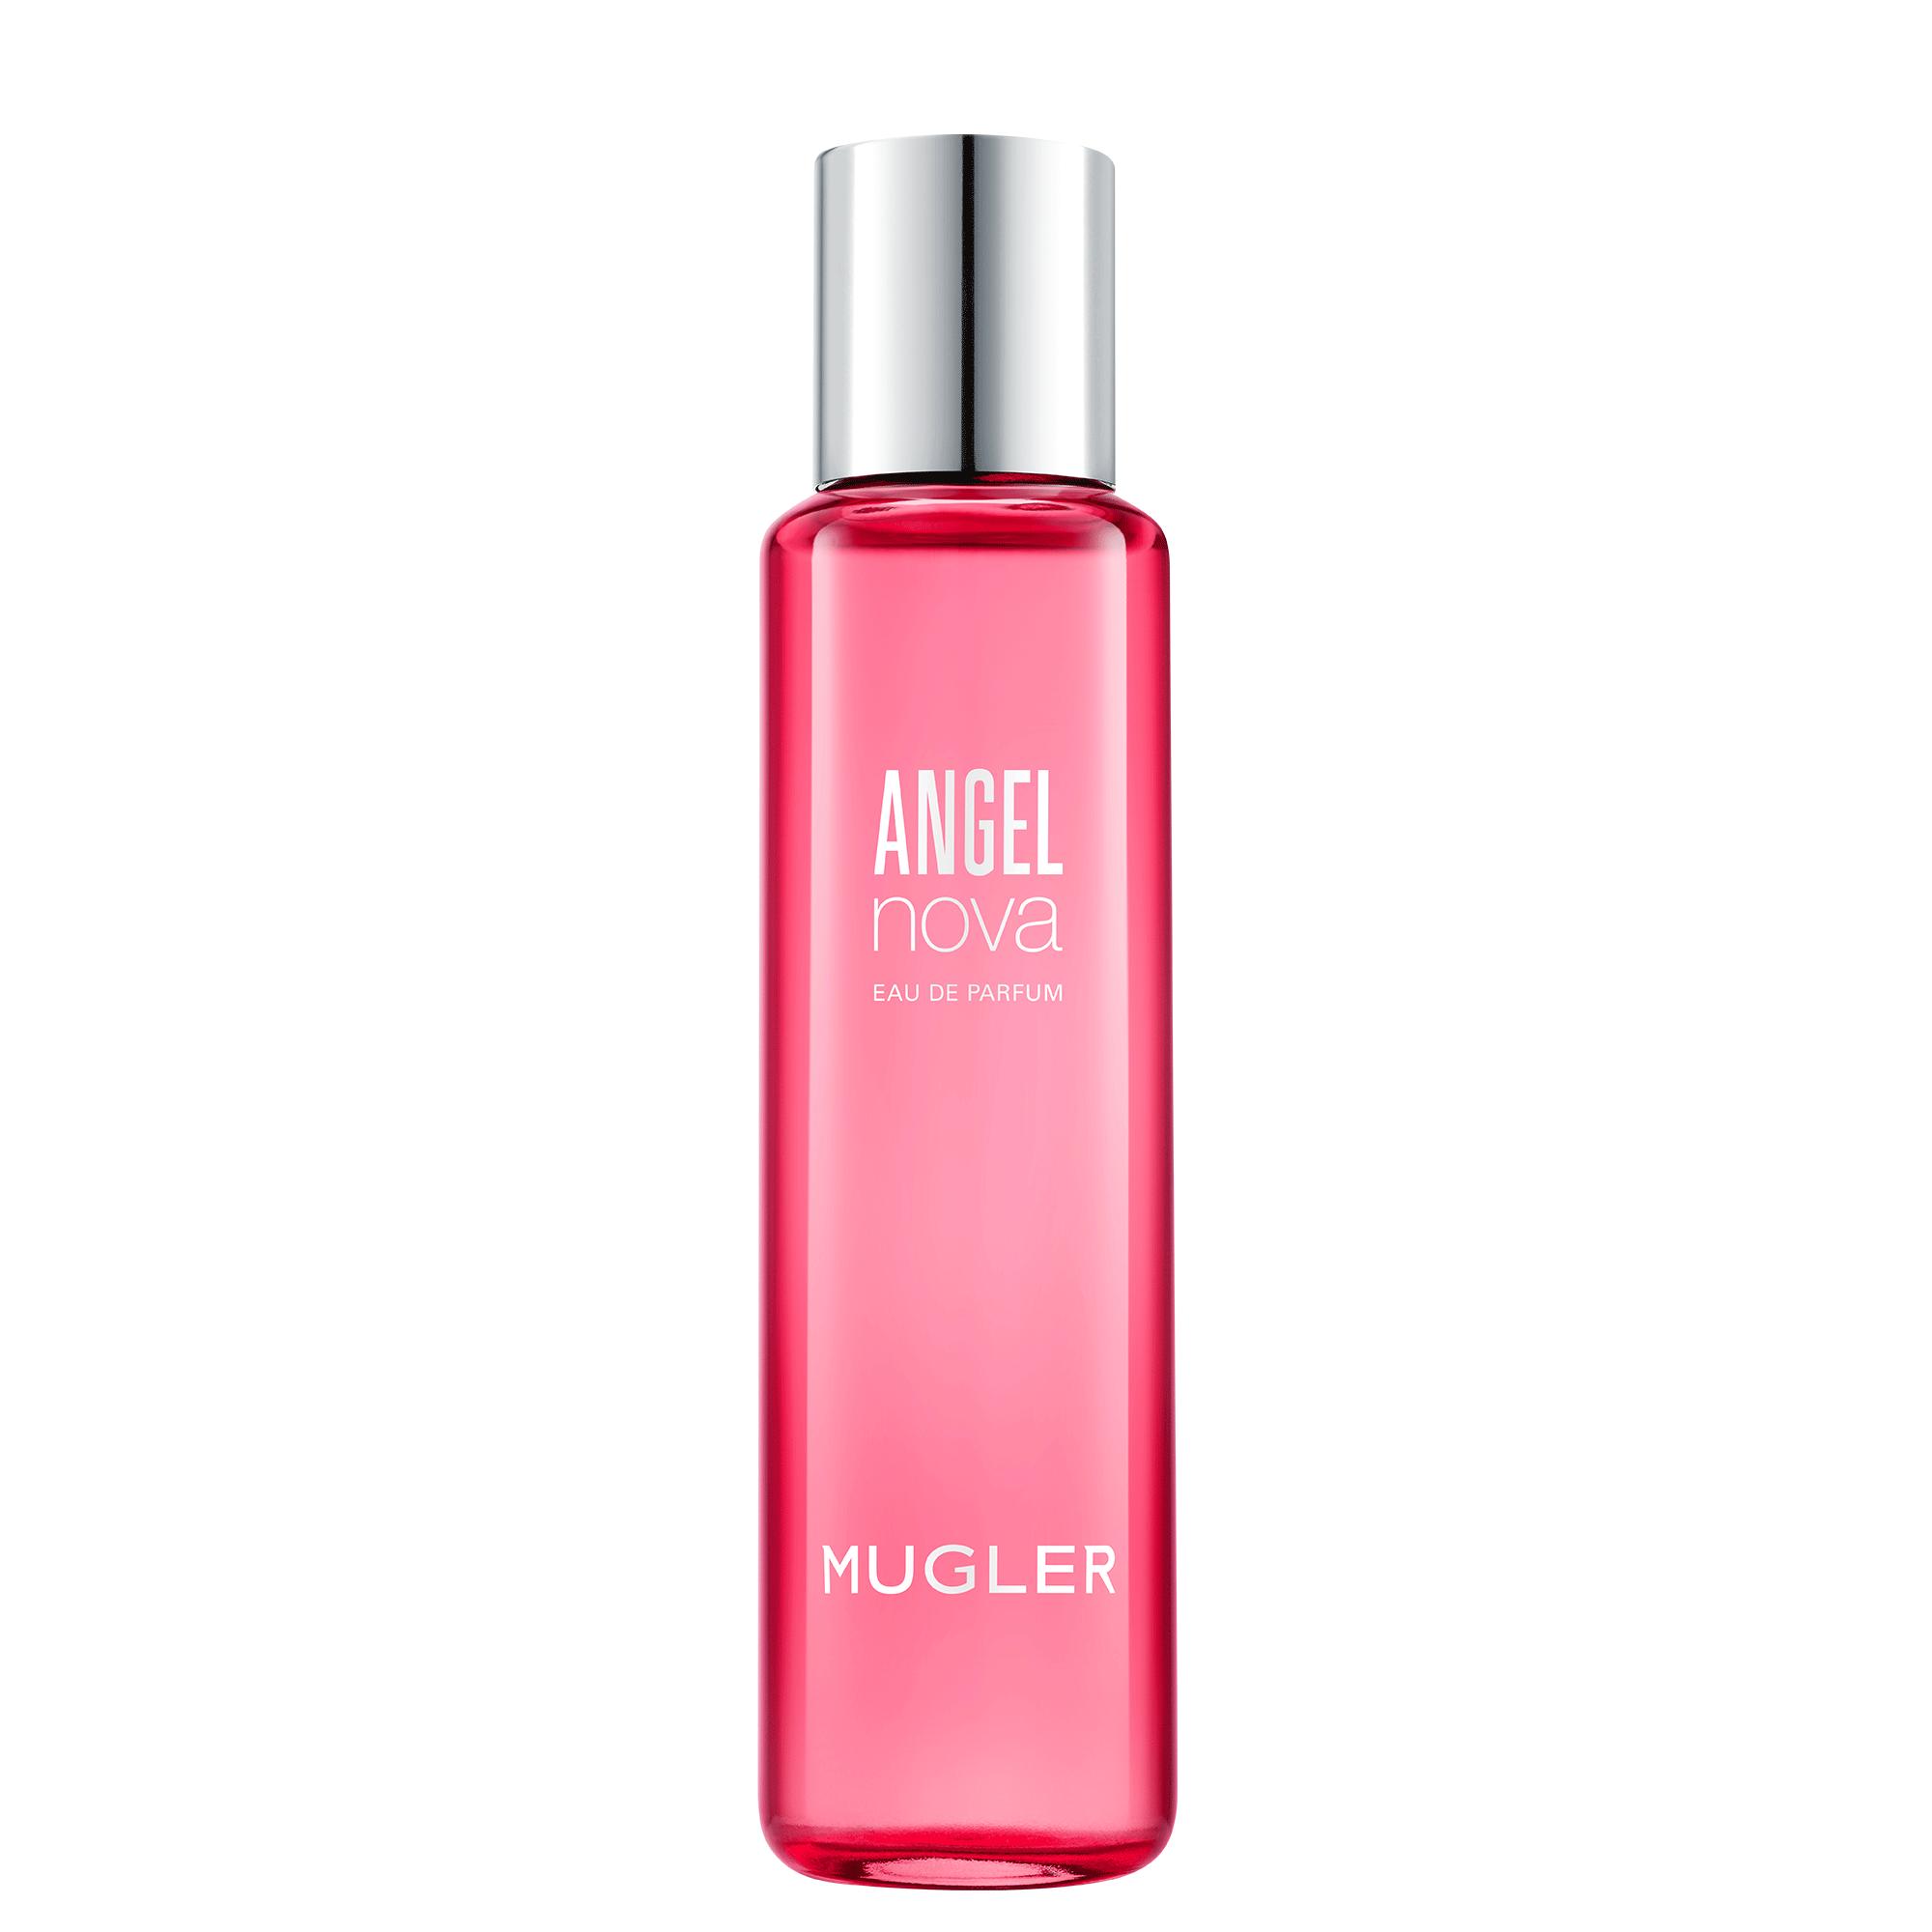 Vertrappen thema mezelf Angel Nova Eau de Parfum Refill Bottle - MUGLER